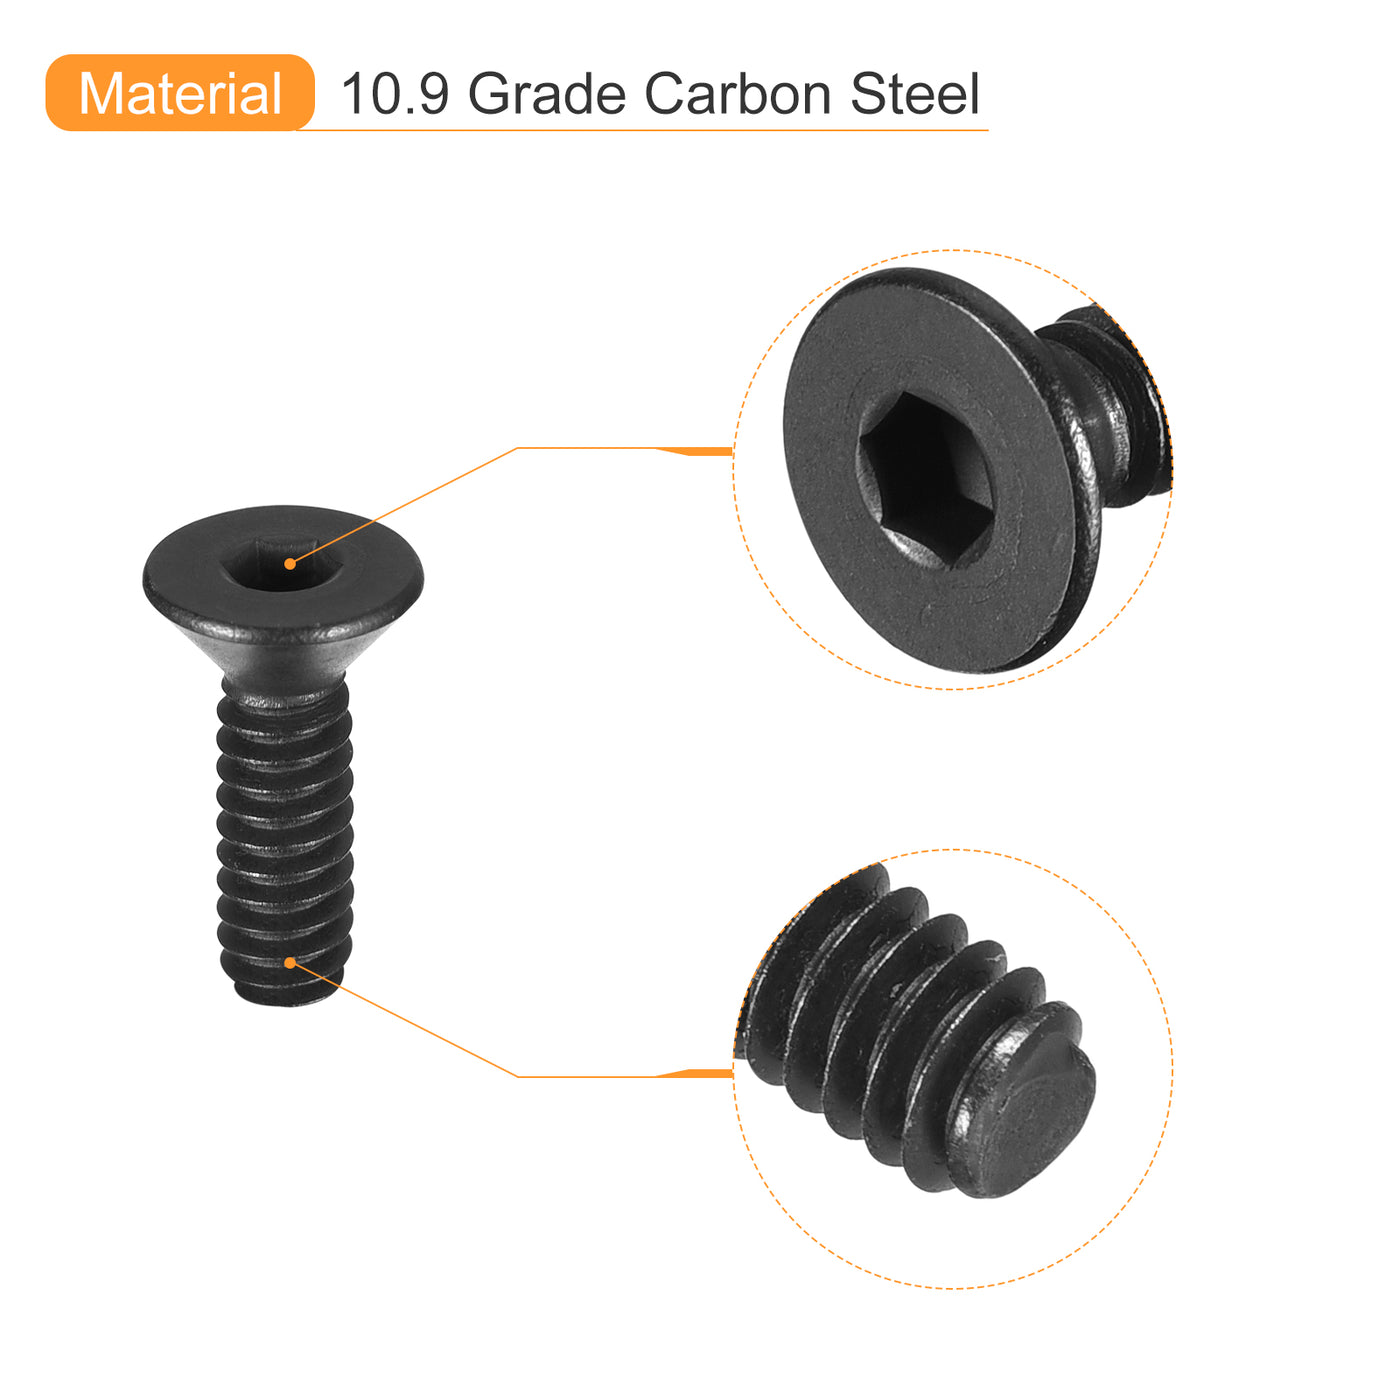 uxcell Uxcell #5-40x3/8" Flat Head Socket Cap Screws, 10.9 Grade Carbon, Black, 20pcs